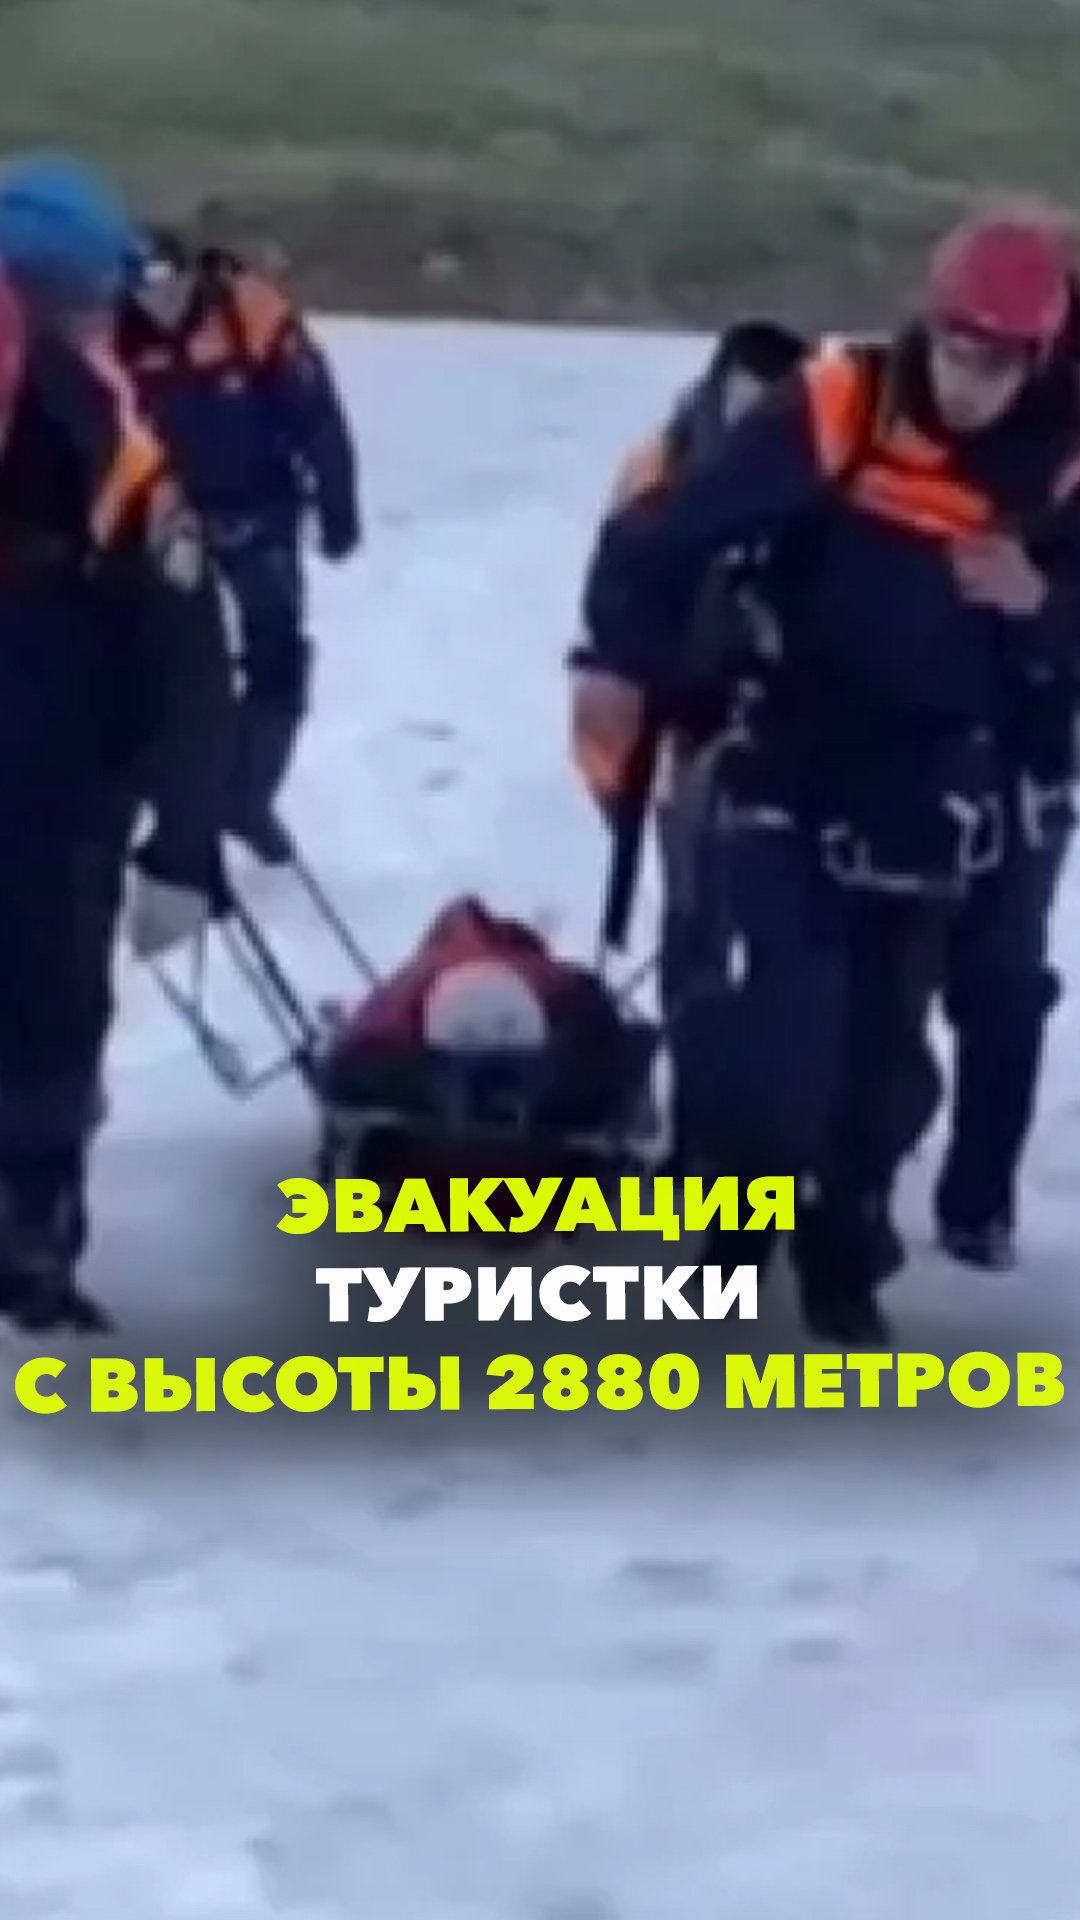 Сломала ногу на высоте 2880 метров. Спасатели сутки эвакуировали туристку в Карачаево-Черкесии